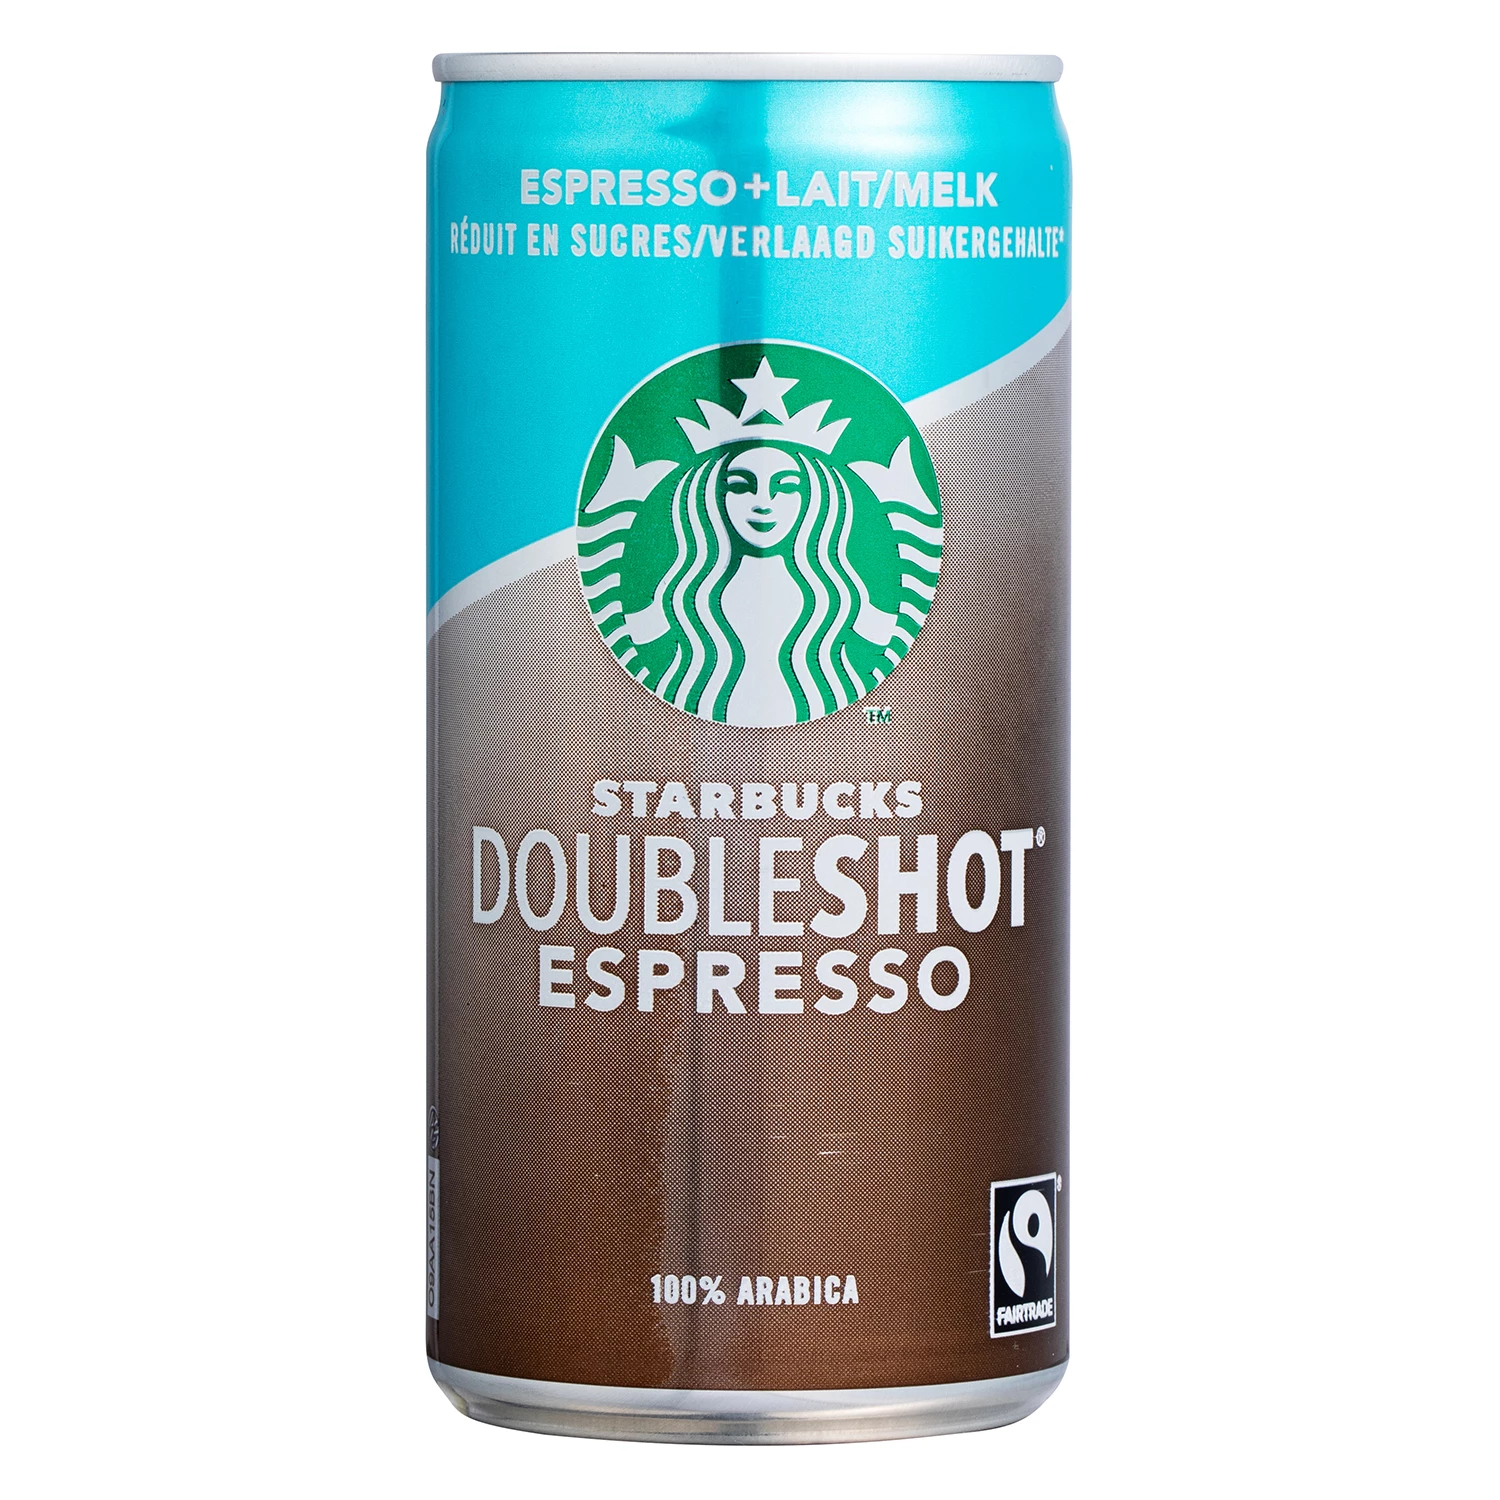 Doubleshot Espresso reduced in sugars 200ml - STARBUCKS